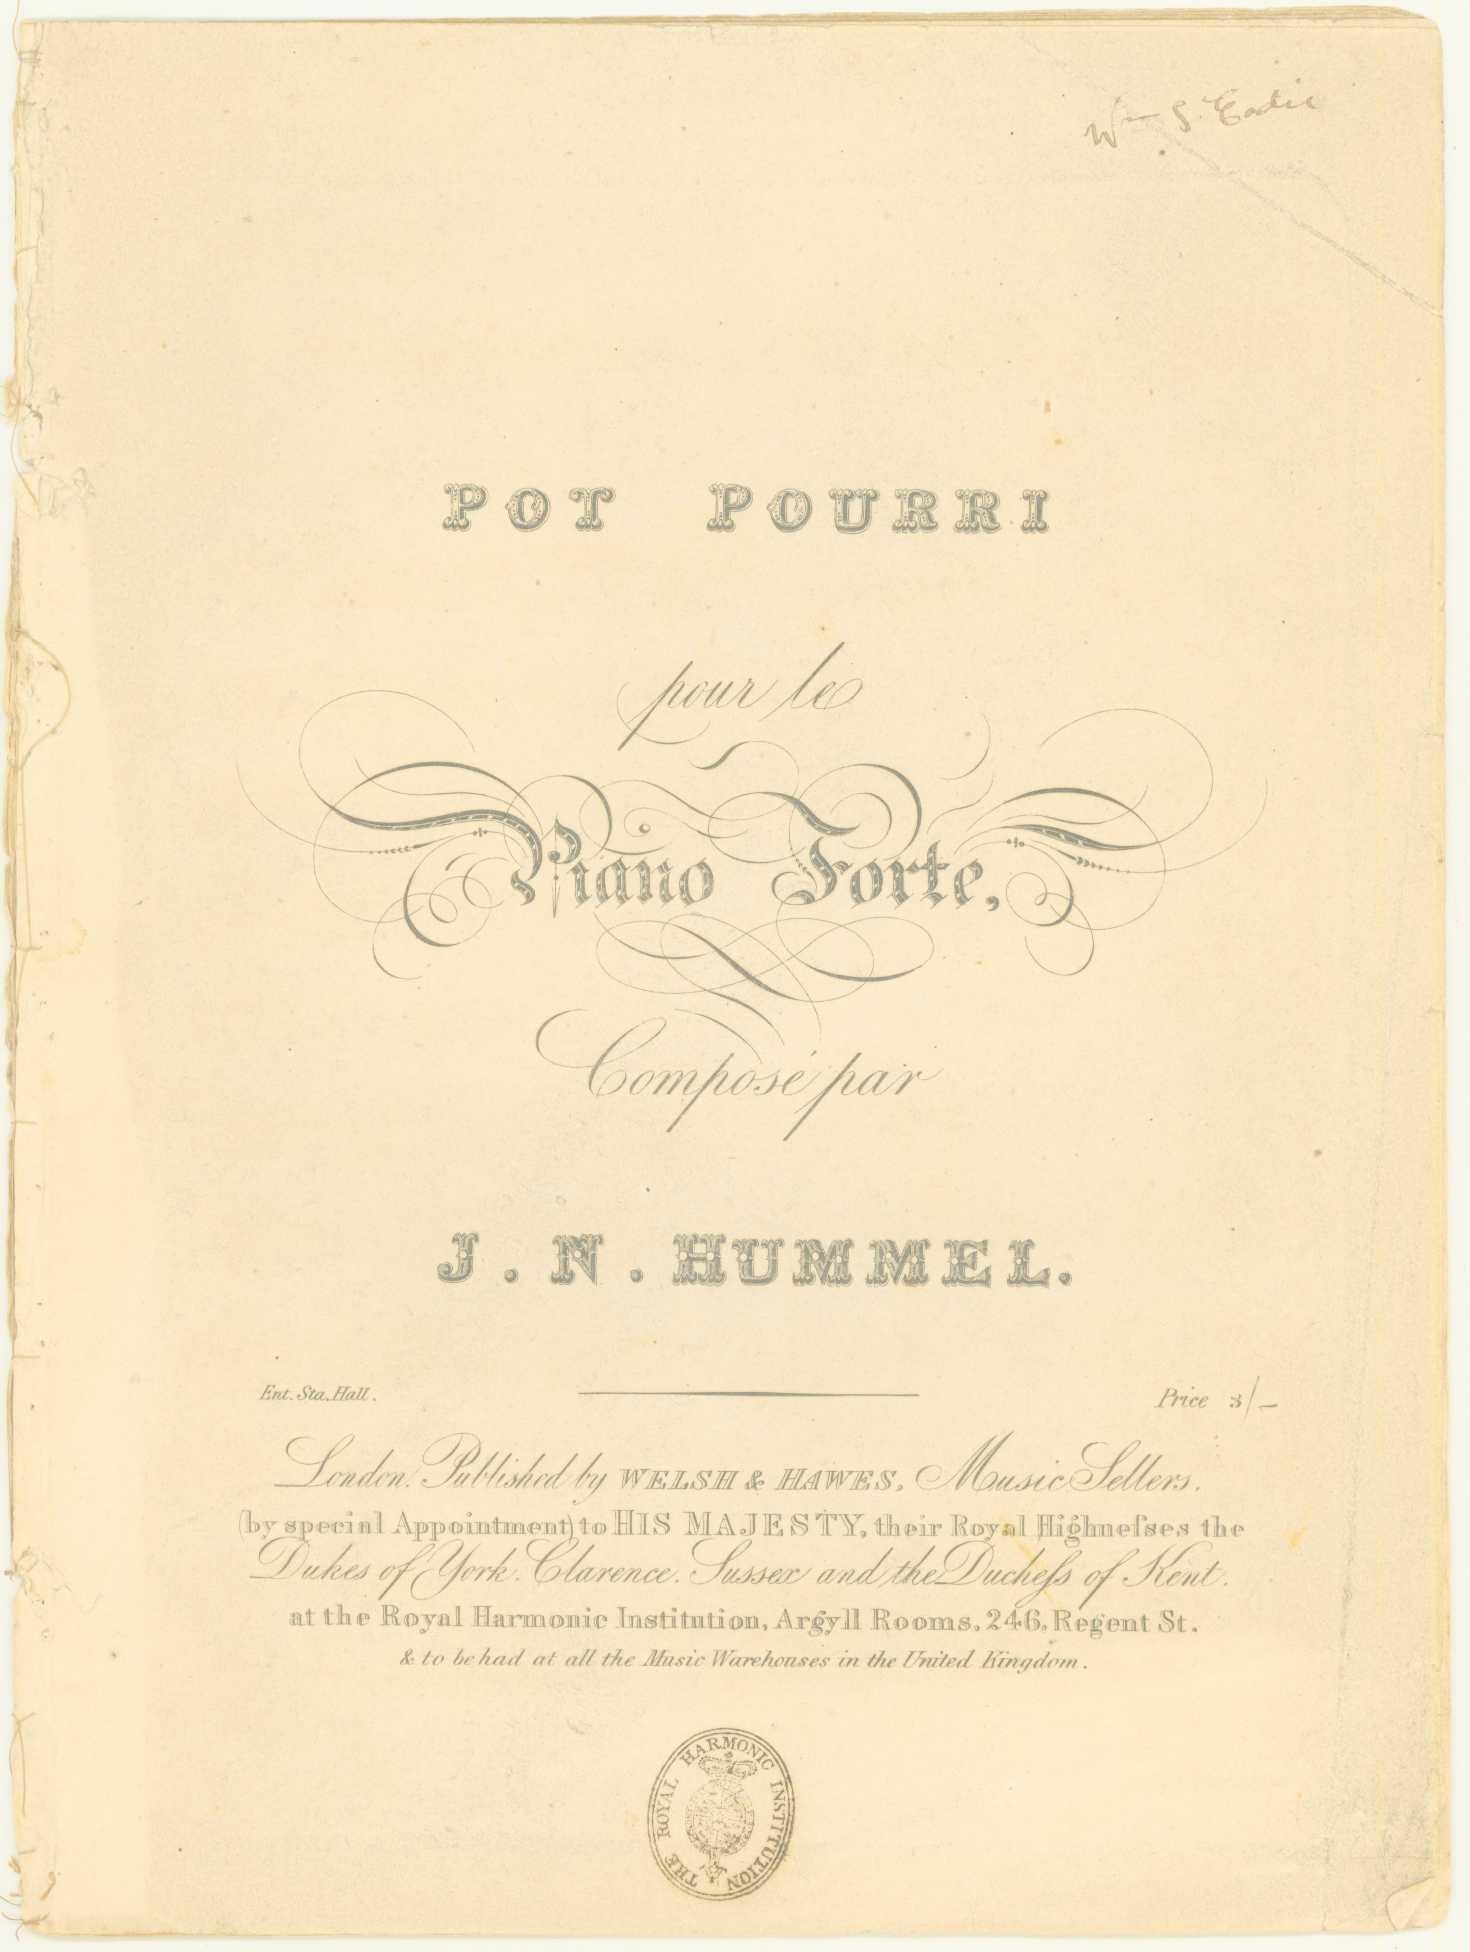 Hummel, Johann N. - Pot Pourri pour le Piano Forte. [Op. 47].